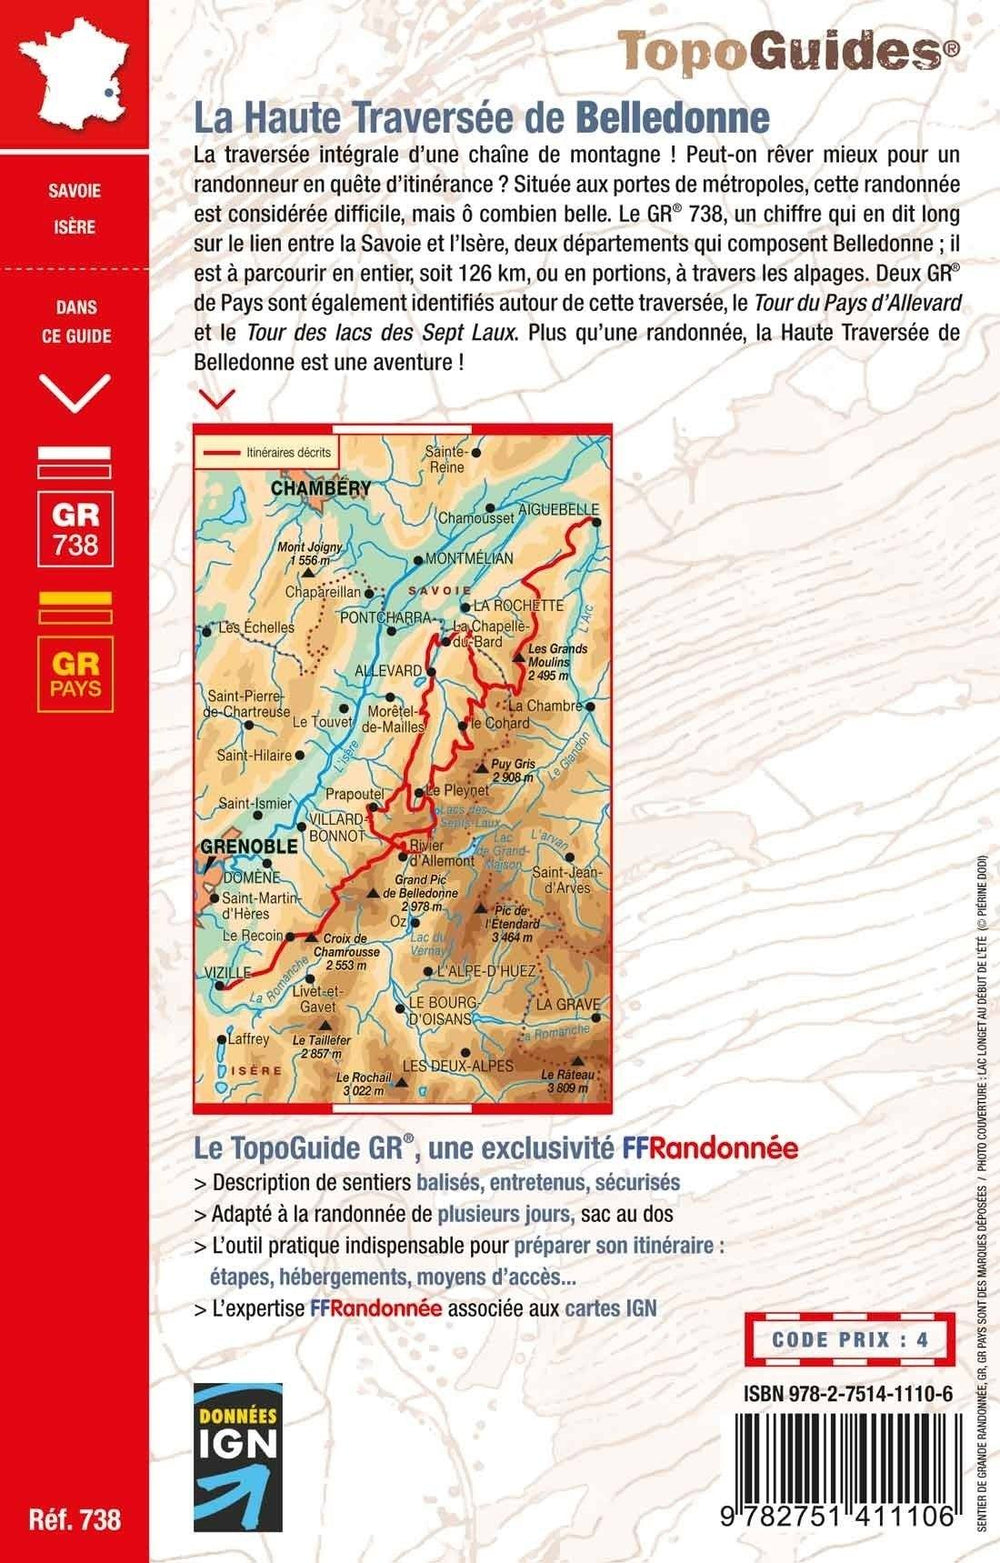 Topoguide de randonnée - Haute traversée de Belledonne | FFR guide de randonnée FFR - Fédération Française de Randonnée 